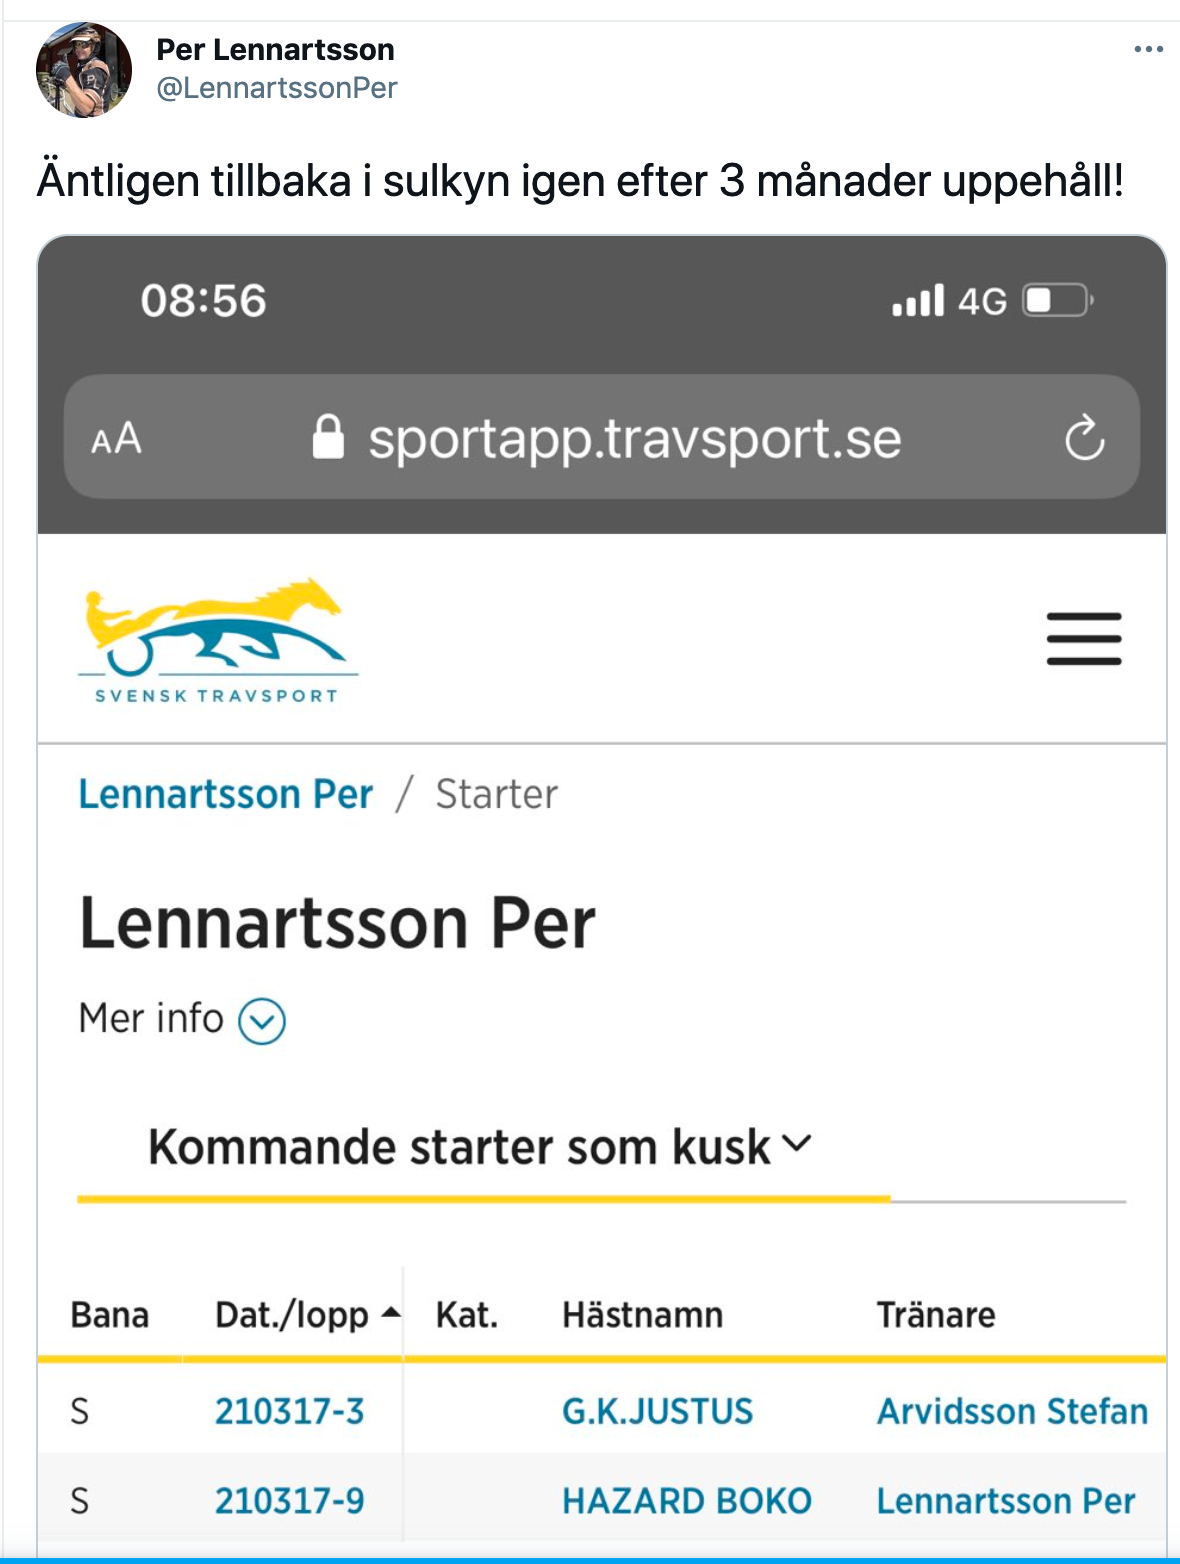 54-årige succékusken Per Lennartsson gör under onsdagens V86-tävlingar från Solvalla efterlängtad comeback. 